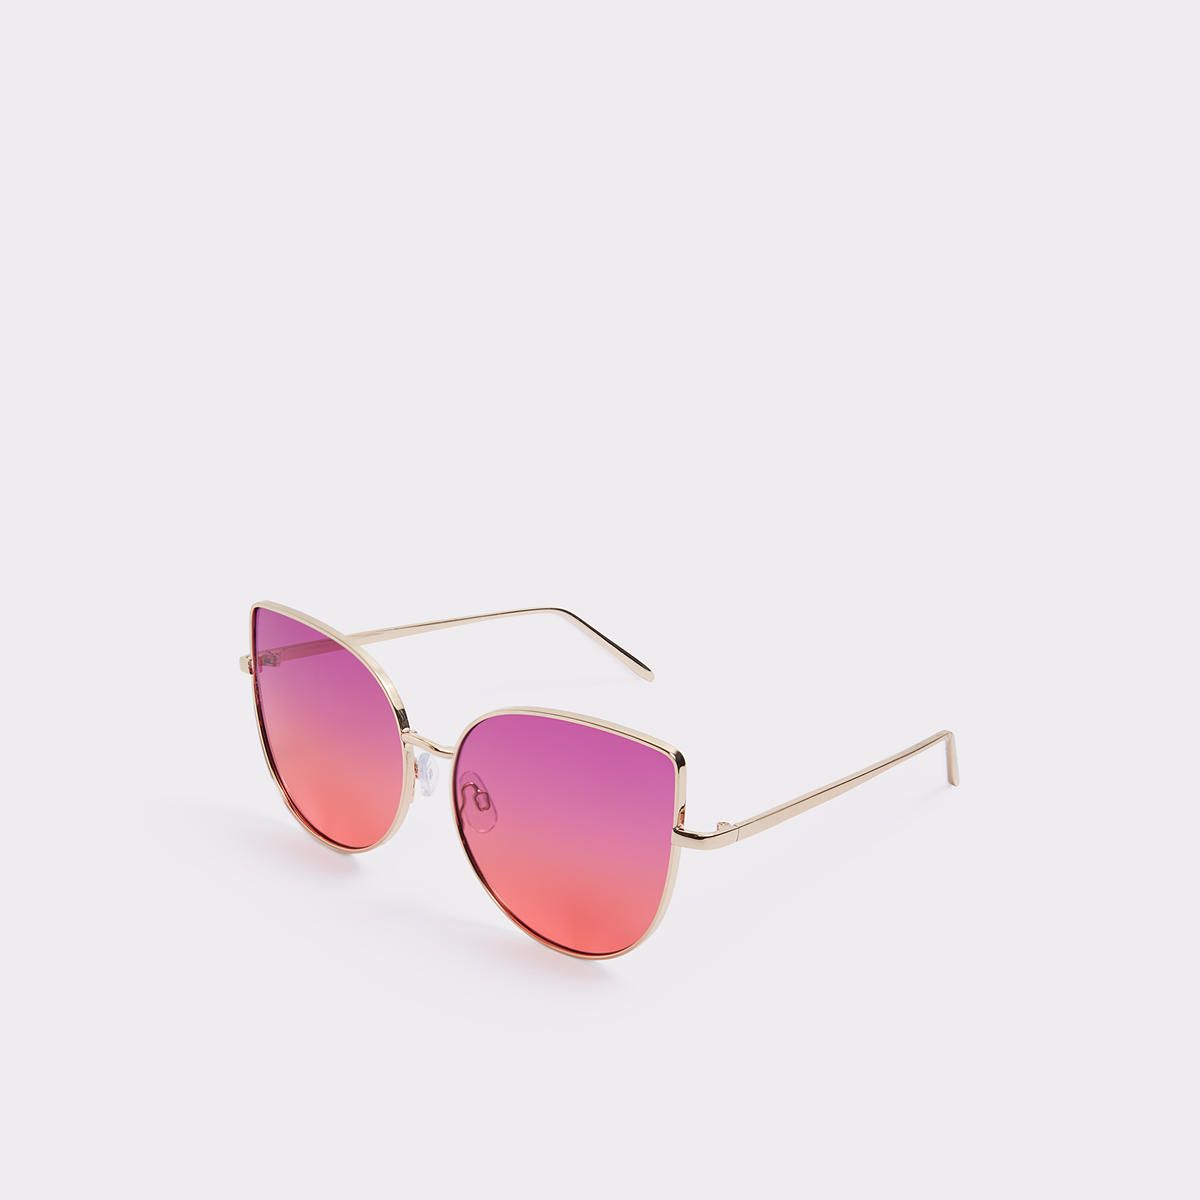 Multicolored Sunglasses